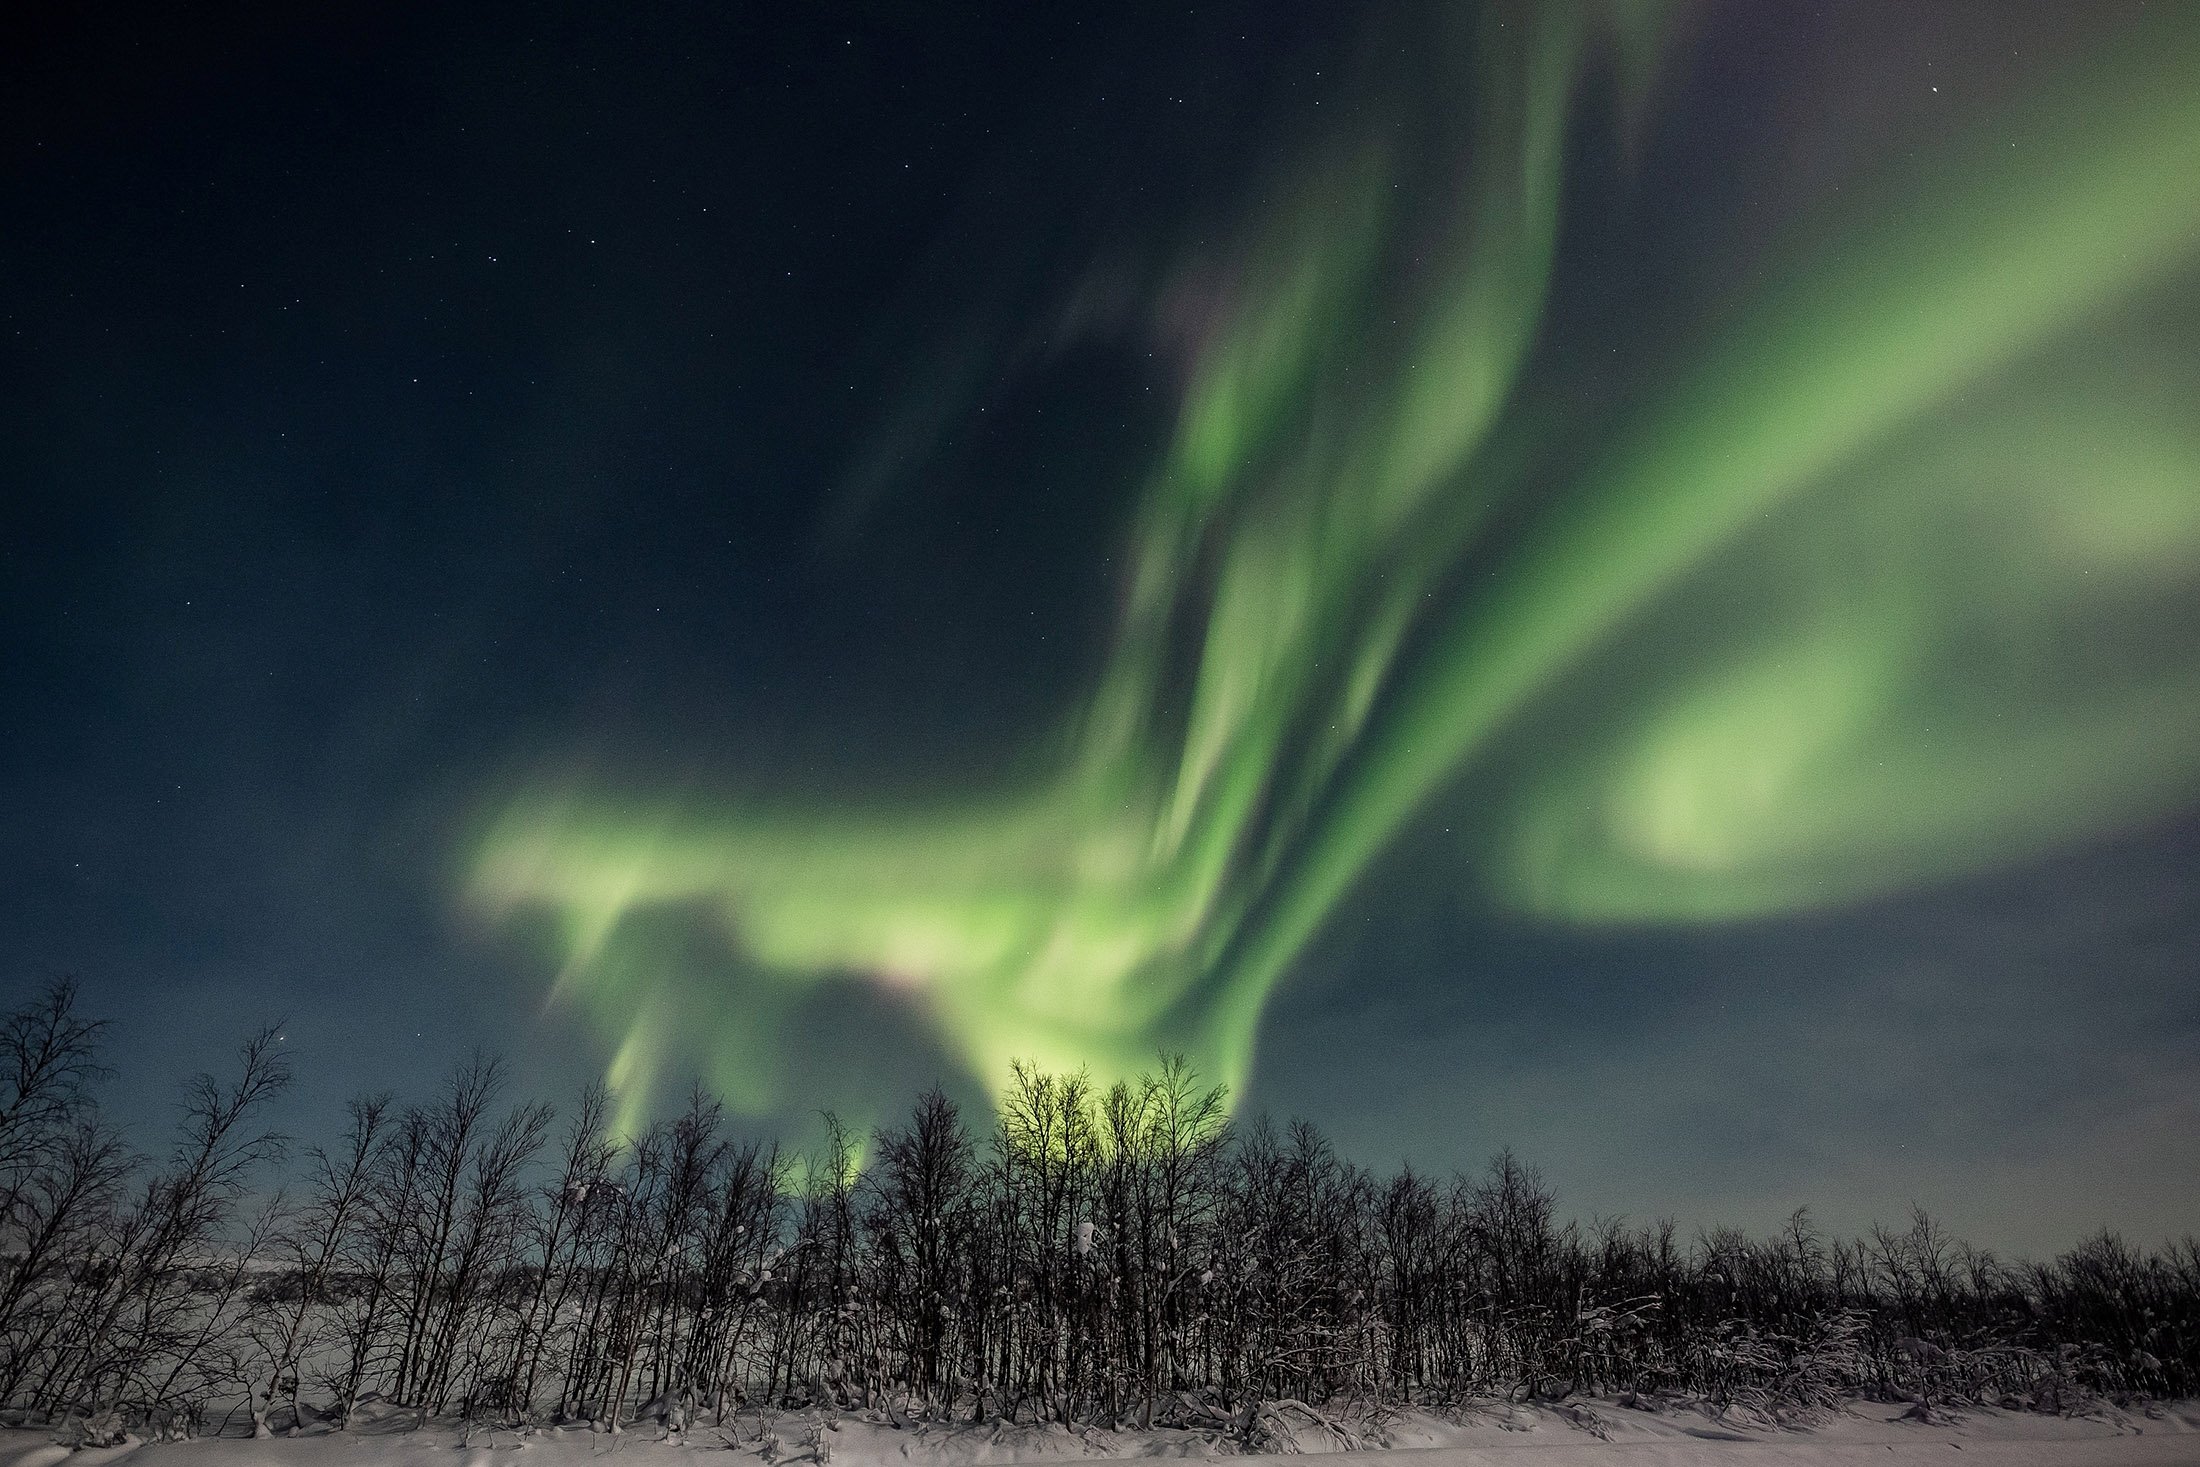 amazing Aurora Borealis image